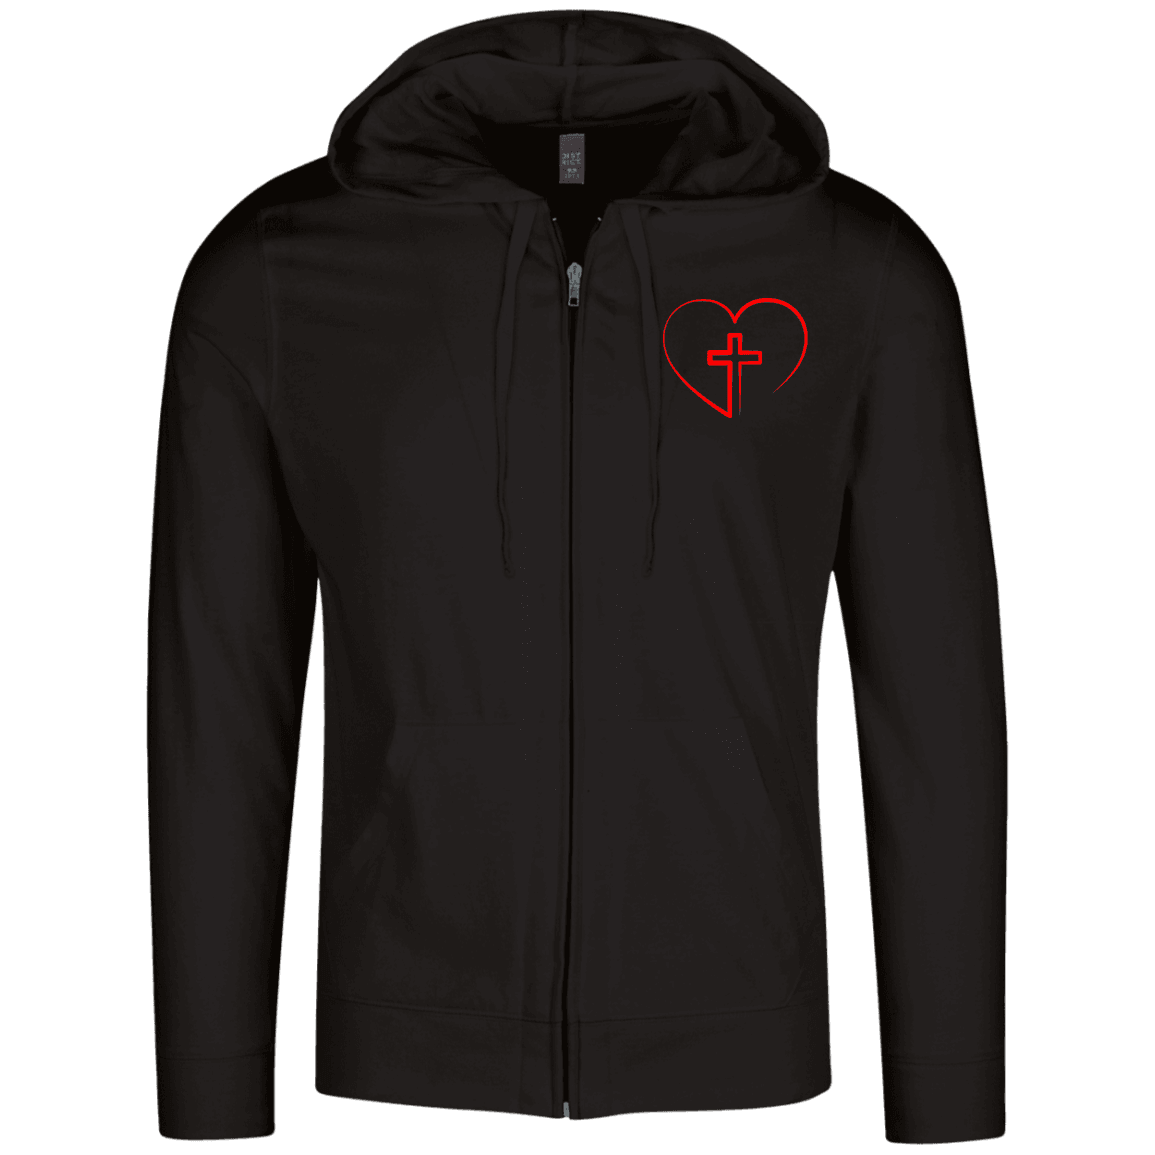 Designs by MyUtopia Shout Out:Jesus is inside My Heart Cross inside a Heart Lightweight Full Zip Hoodie,X-Small / Black,Sweatshirts